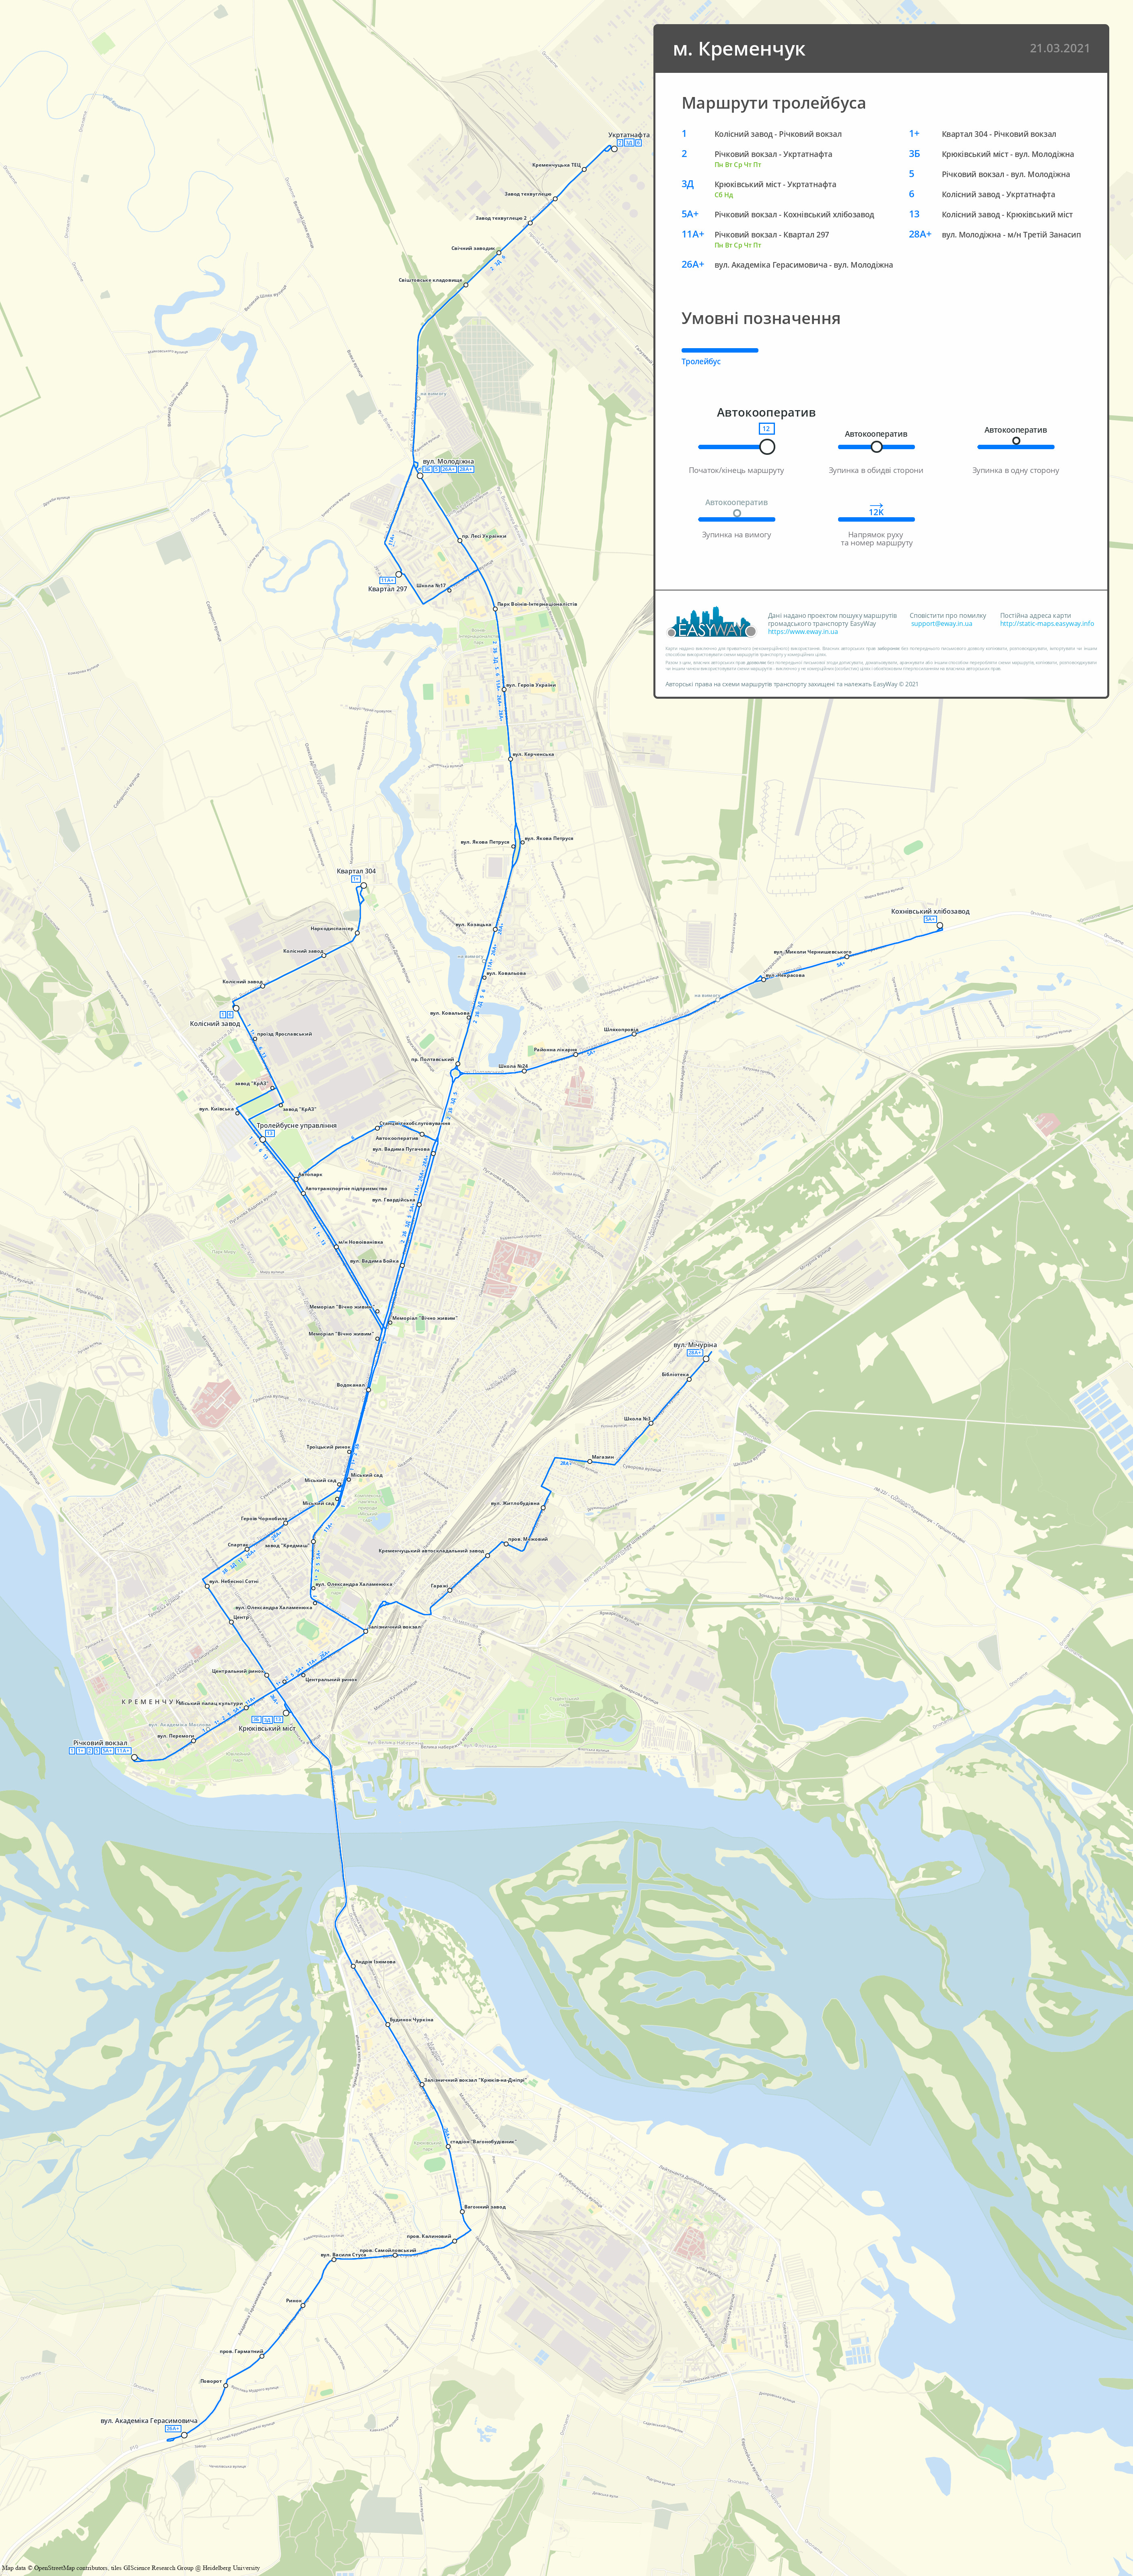 Kremenchuk — Citywide Maps